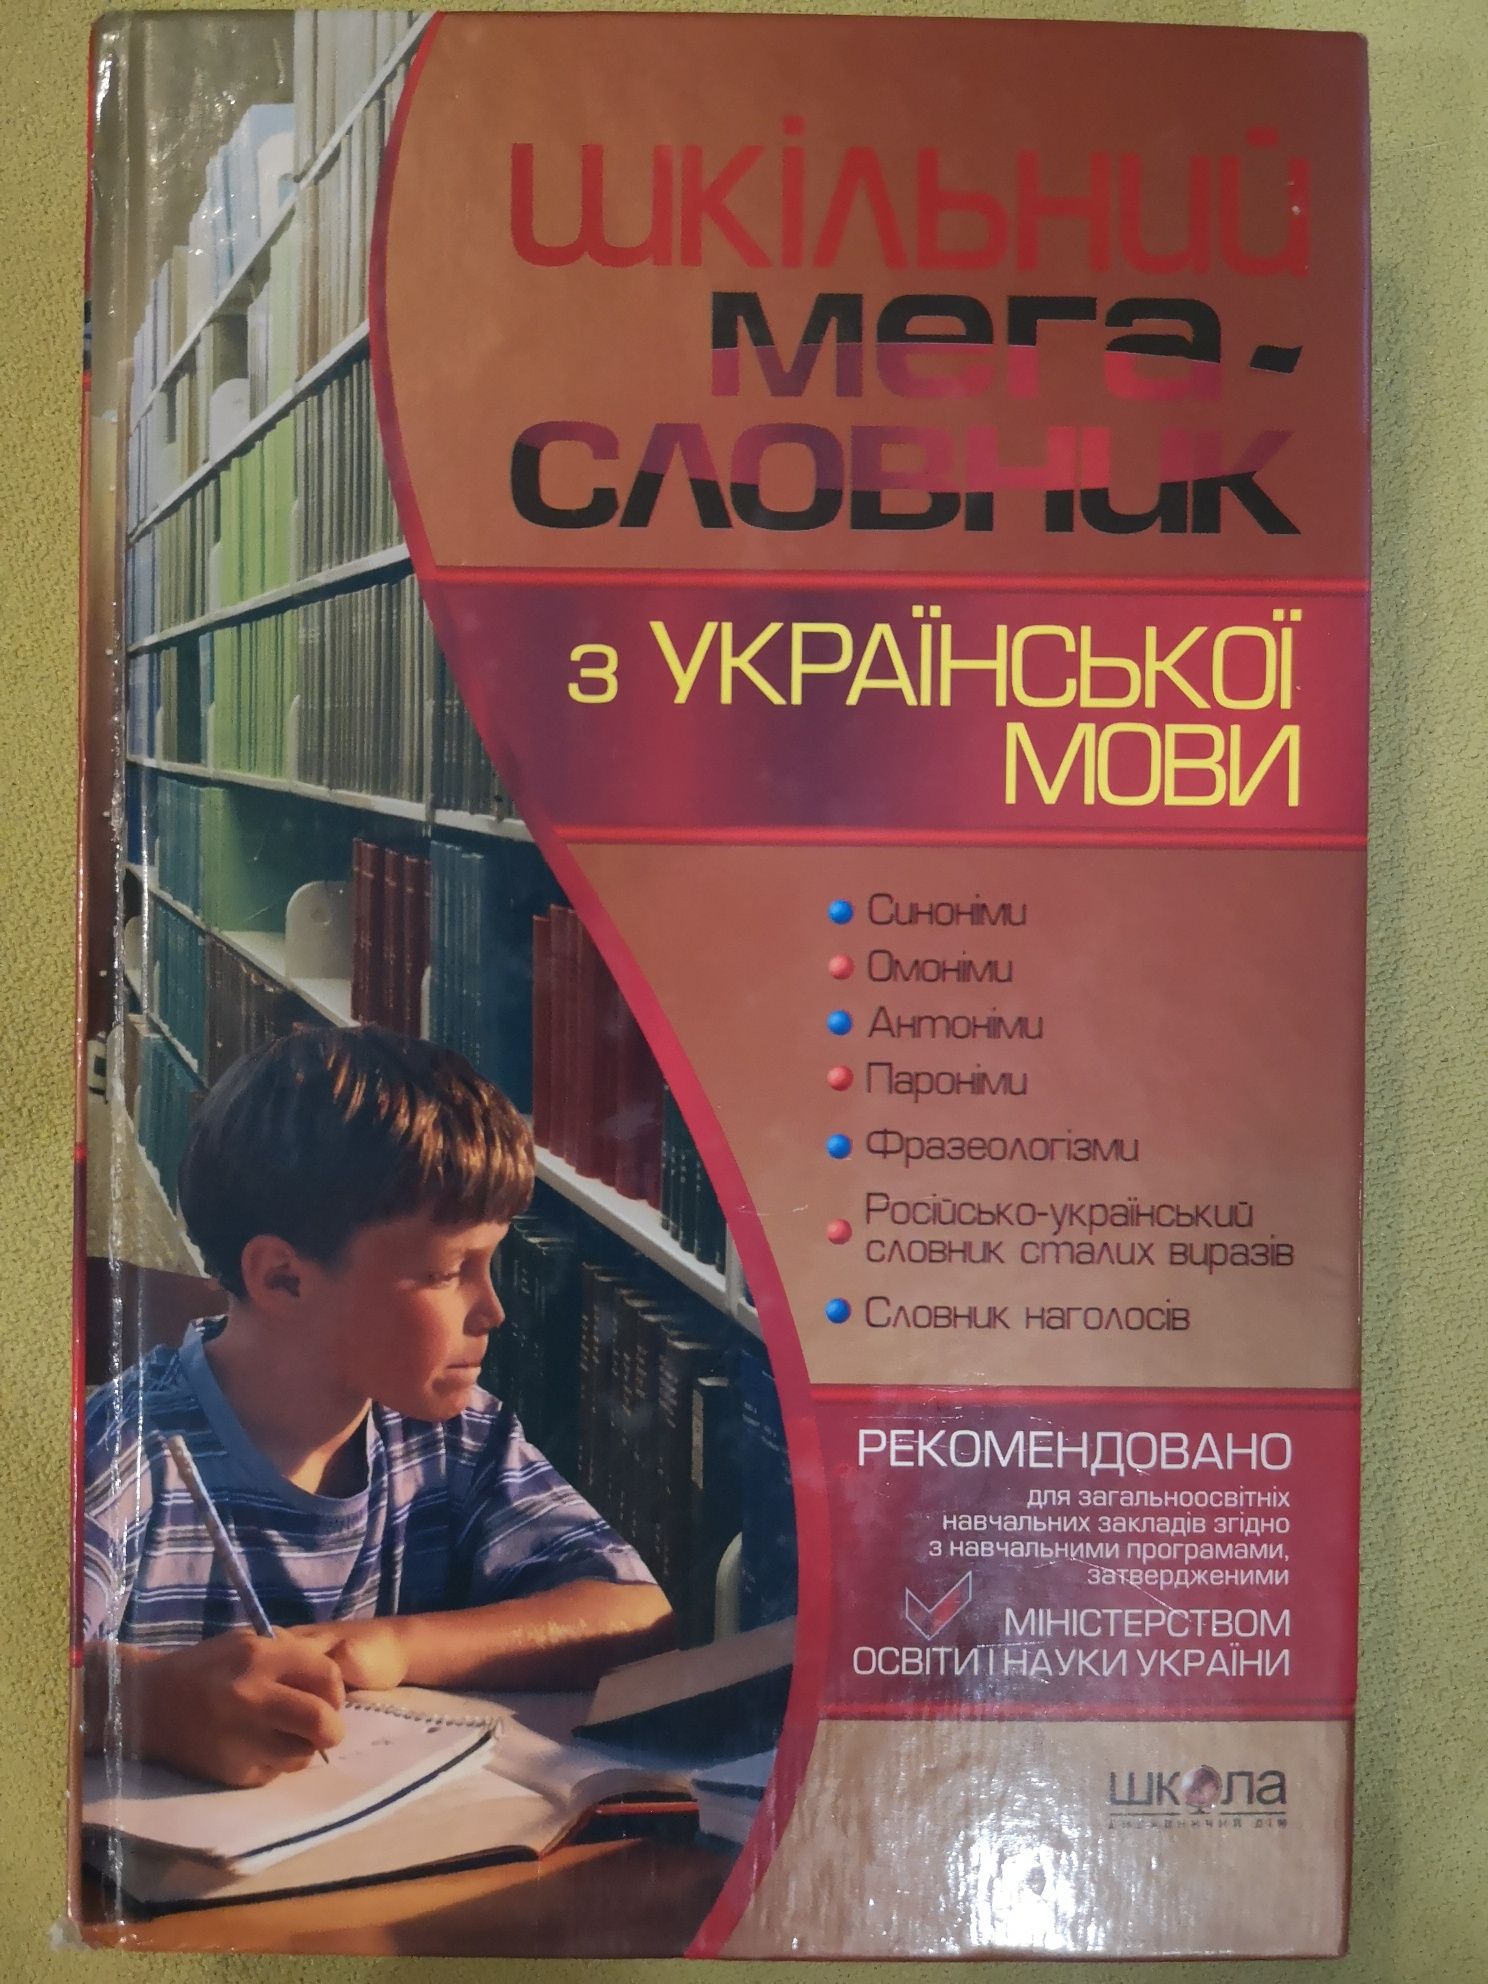 Шкільний мегасловник з української мови